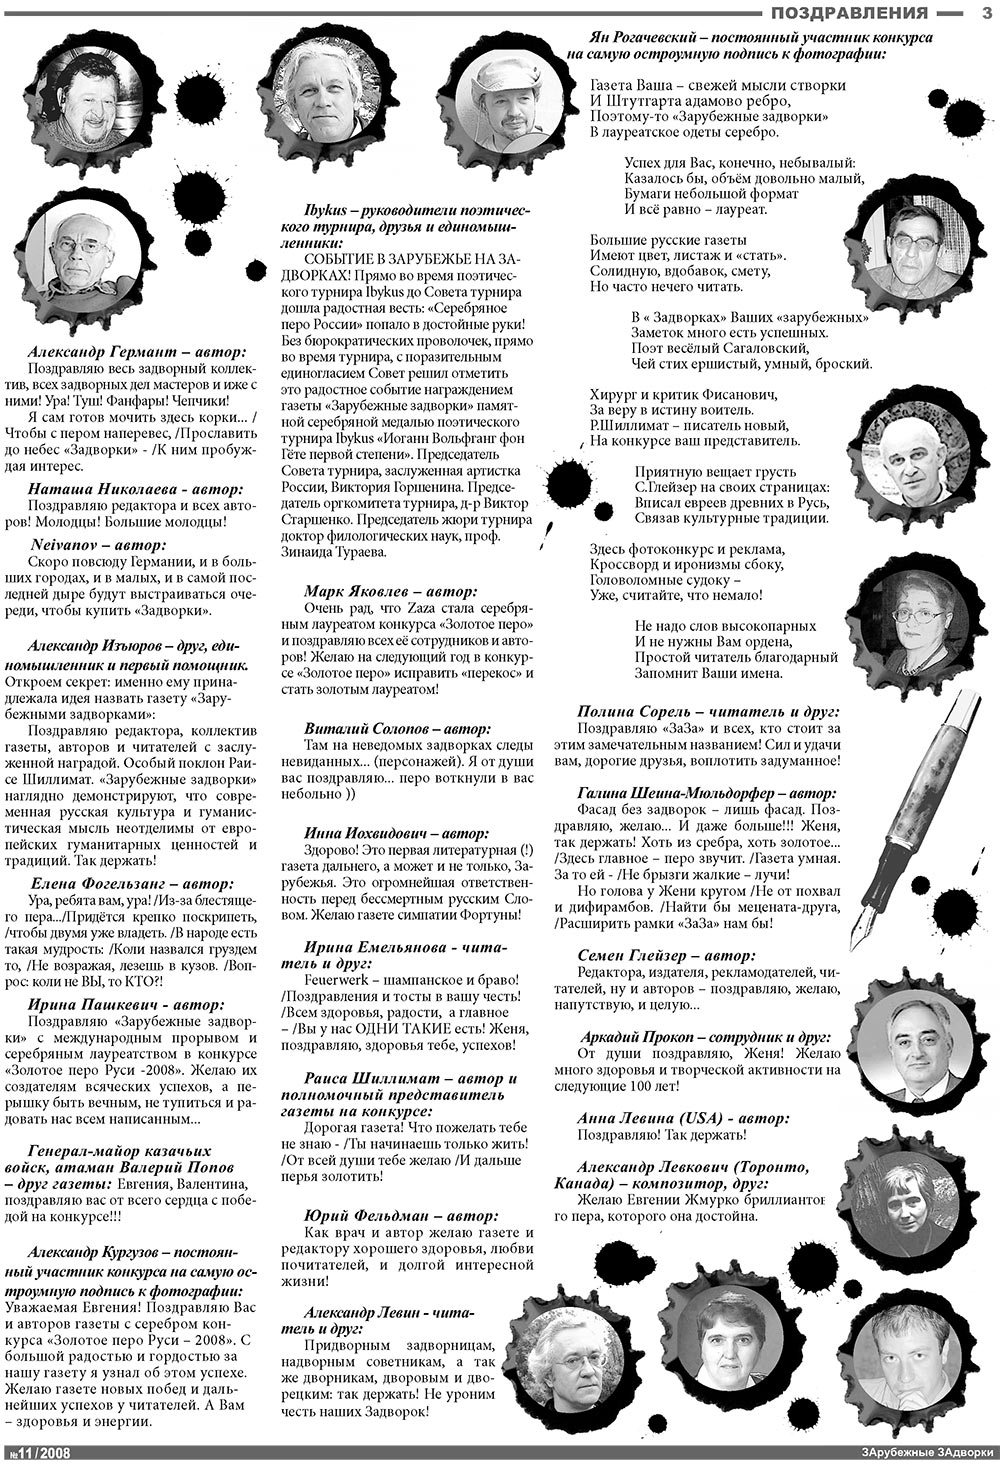 Известия BW, газета. 2008 №11 стр.3